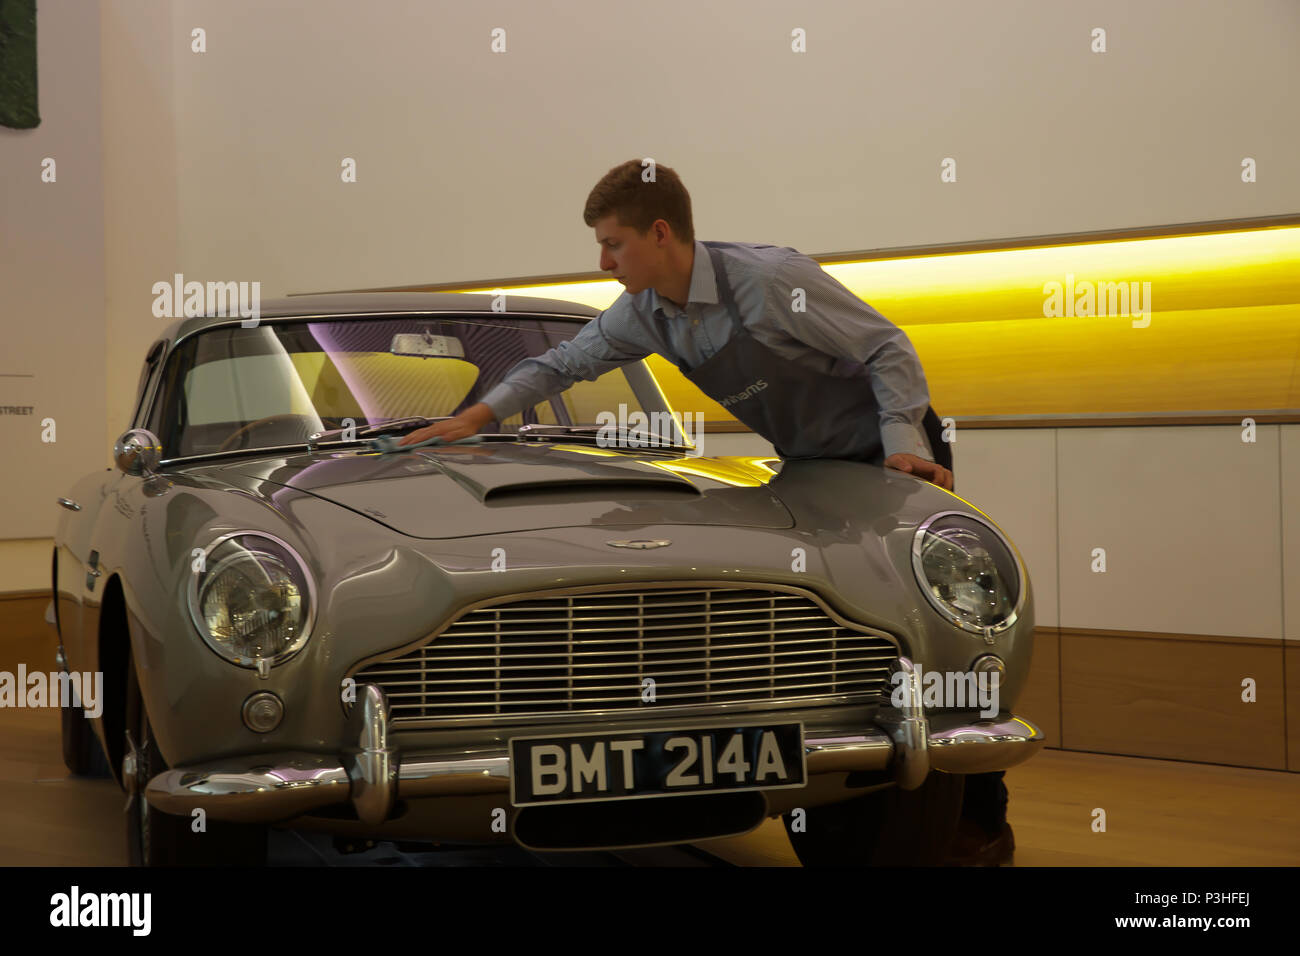 Londres, Royaume-Uni. 19 Juin, 2018. L'ultime Bond voiture - le 1965 Aston Martin DB5 conduit par James Bond (Pierce Brosnan) dans la motion 1995 photo ISLANDE - câbles Bonhams photo. Estimé à £600 000 1,200,000-1,. La DB5 est devenu synonyme avec James Bond, et cet exemple en vedette dans la célèbre scène de poursuite d'ouverture d'Islande où Bond dés avec arch villainess Xenia Onatopp dans sa Ferrari à travers les collines au-dessus de Monaco. Lorsqu'il est acheté par le propriétaire actuel en 2001, la voiture est devenue la plus précieuse de souvenirs d'obligations déjà vendu. Credit : Keith Larby/Alamy Live News Banque D'Images